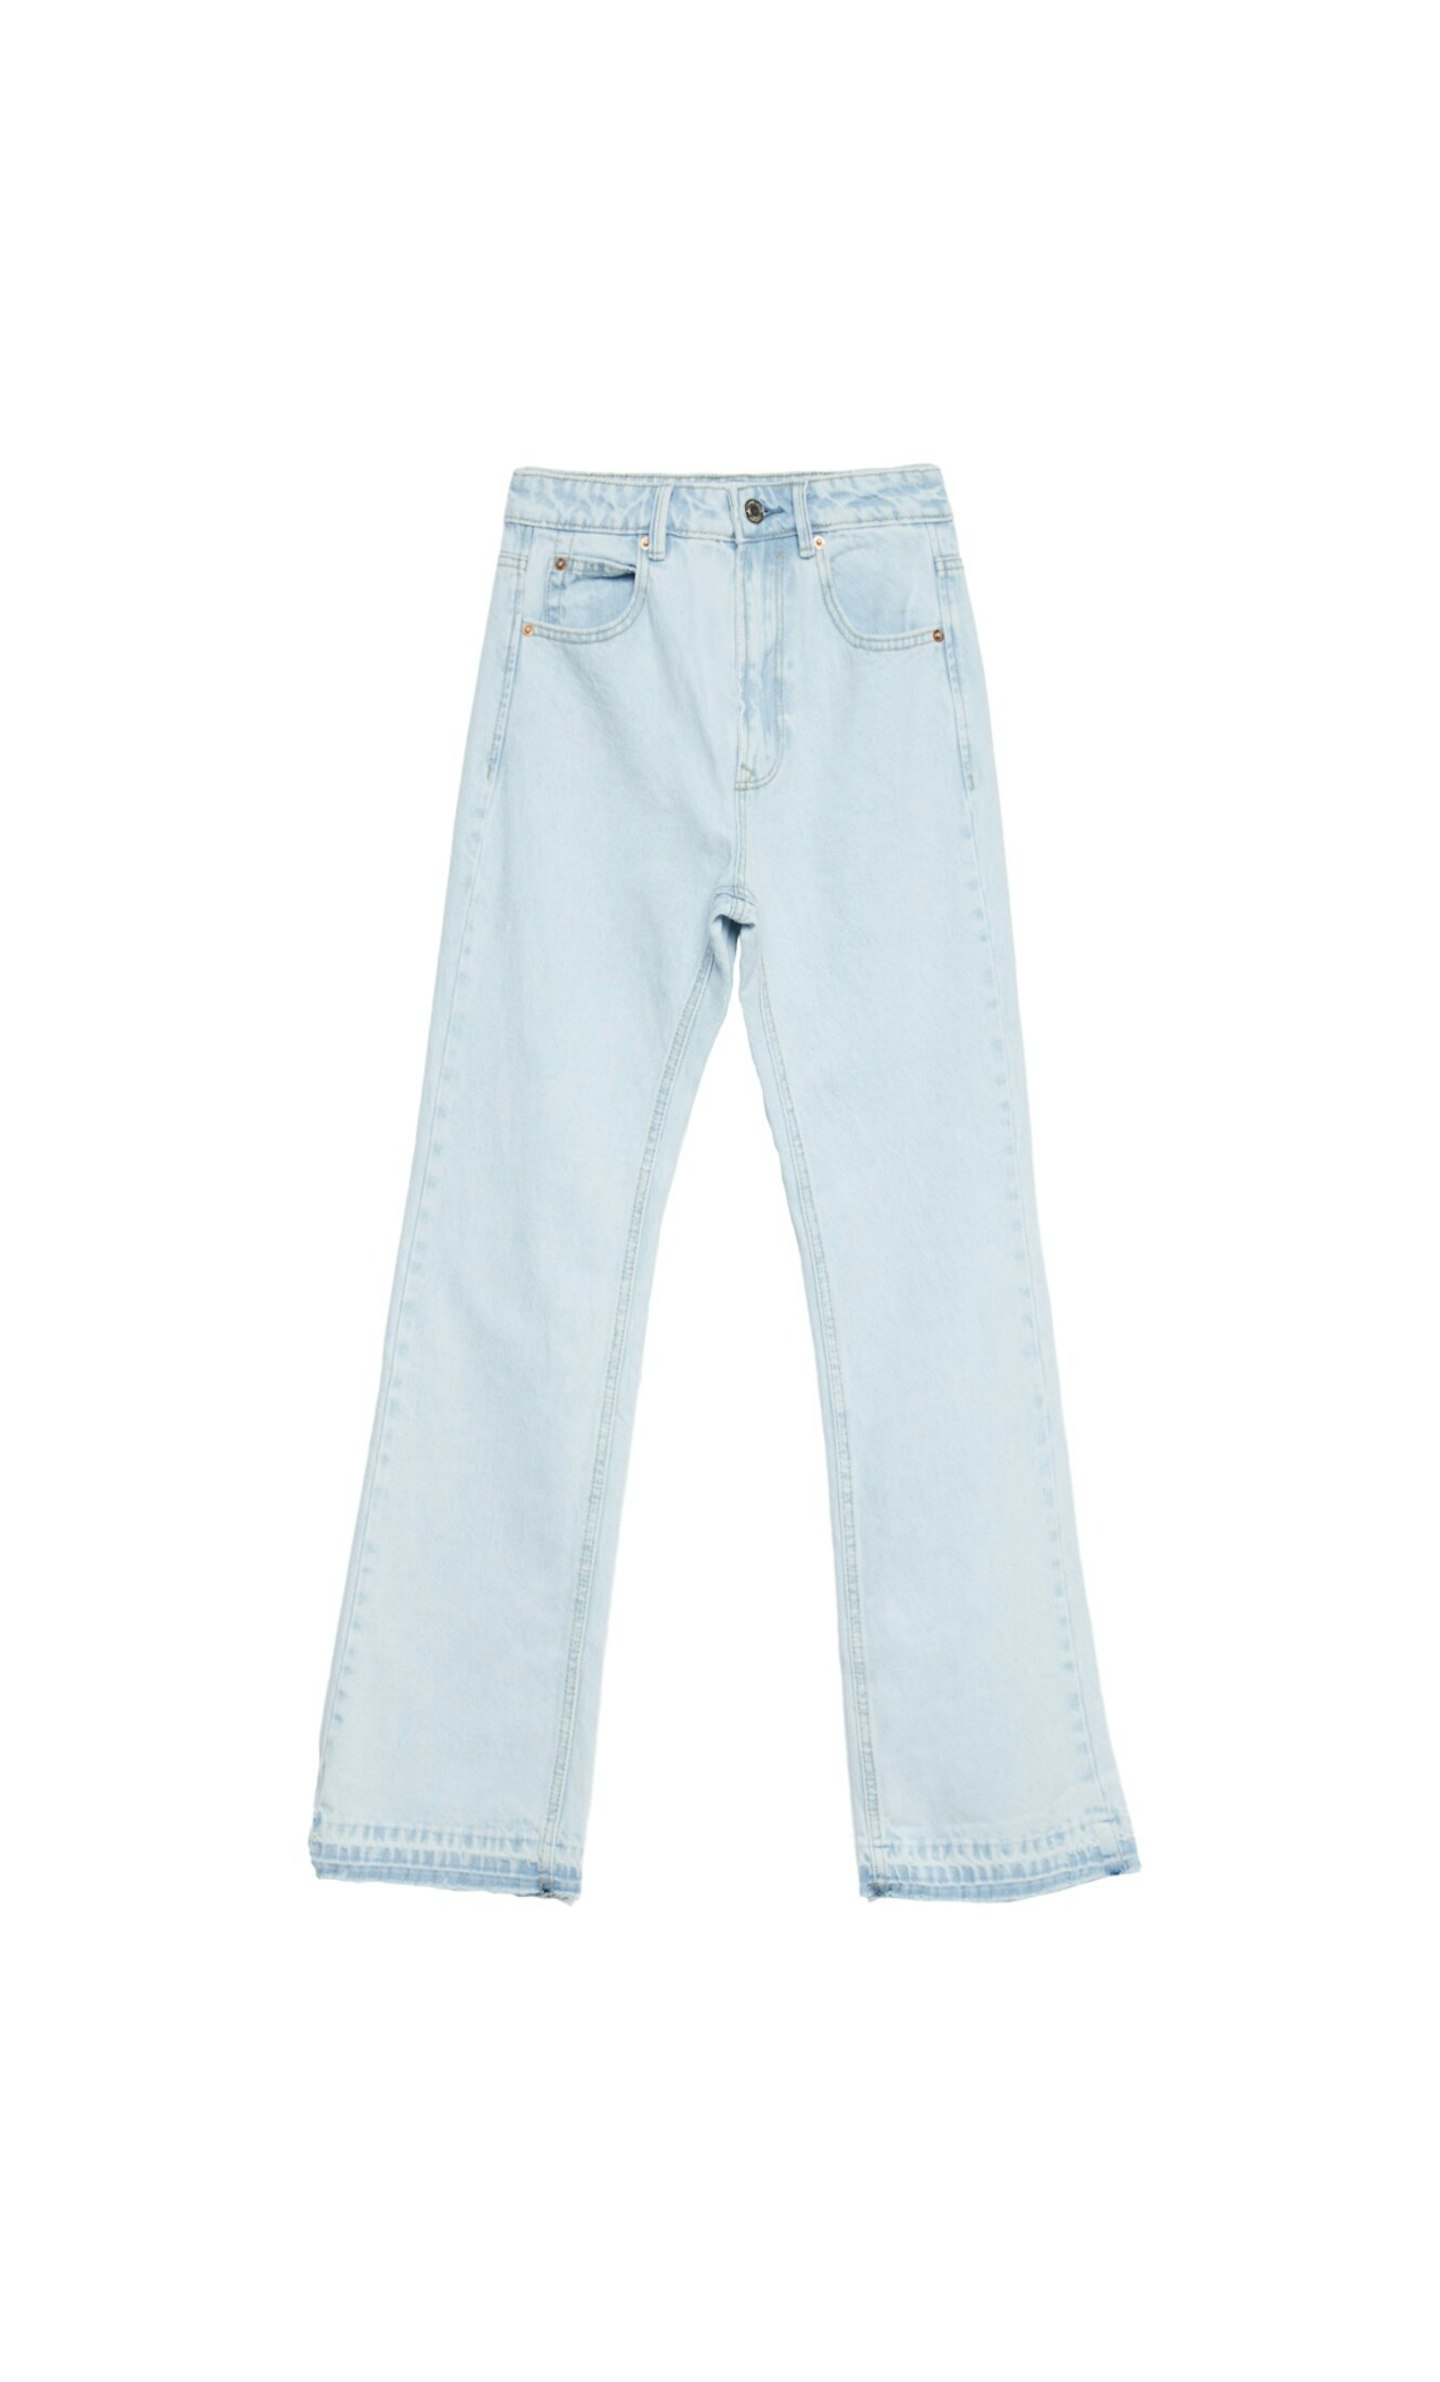 Vintage Flared Jeans, £27.99